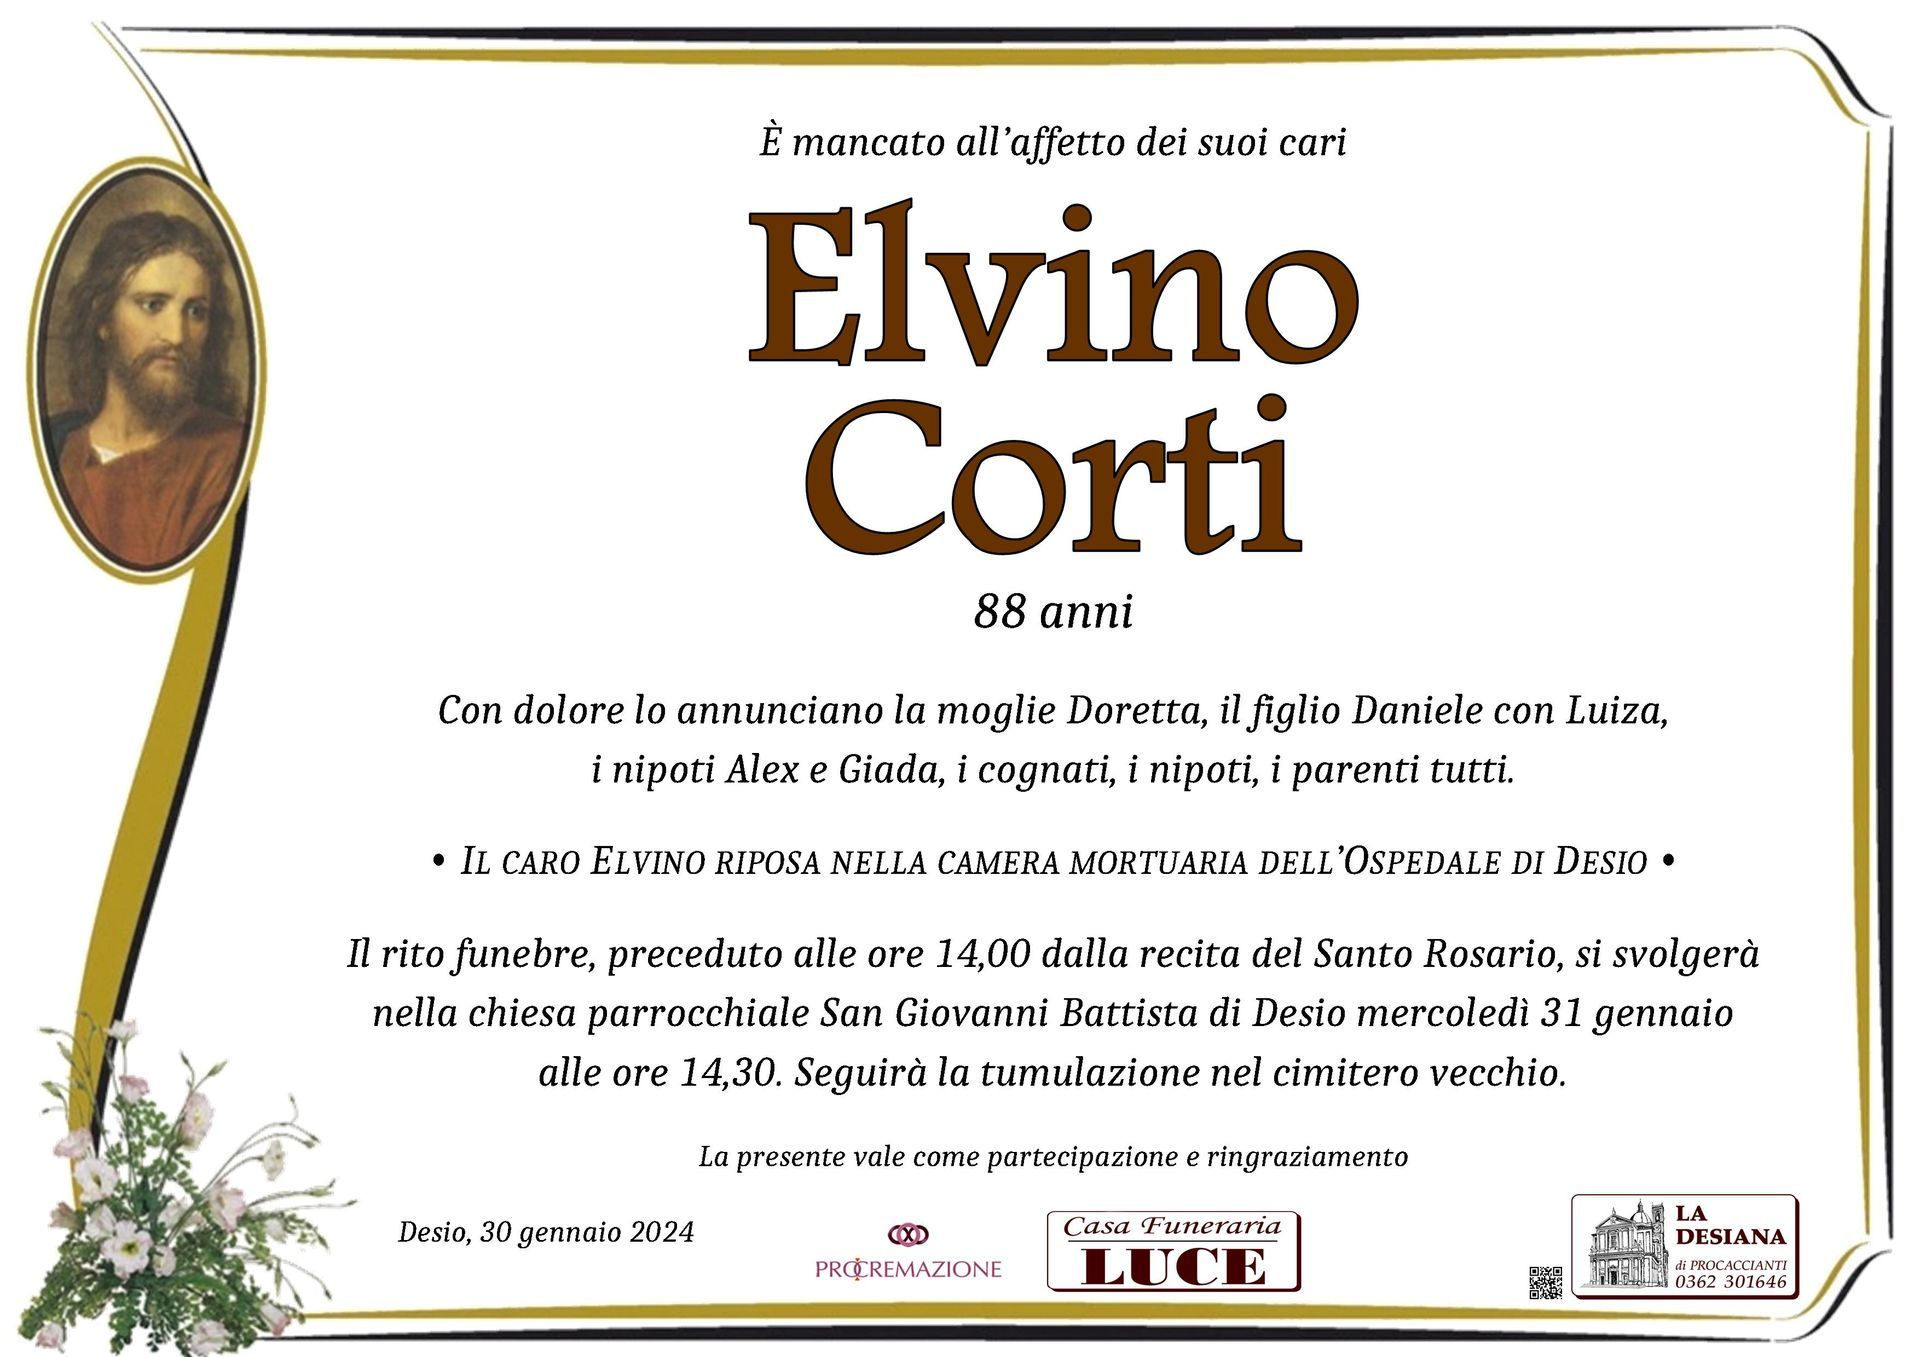 Elvino Corti